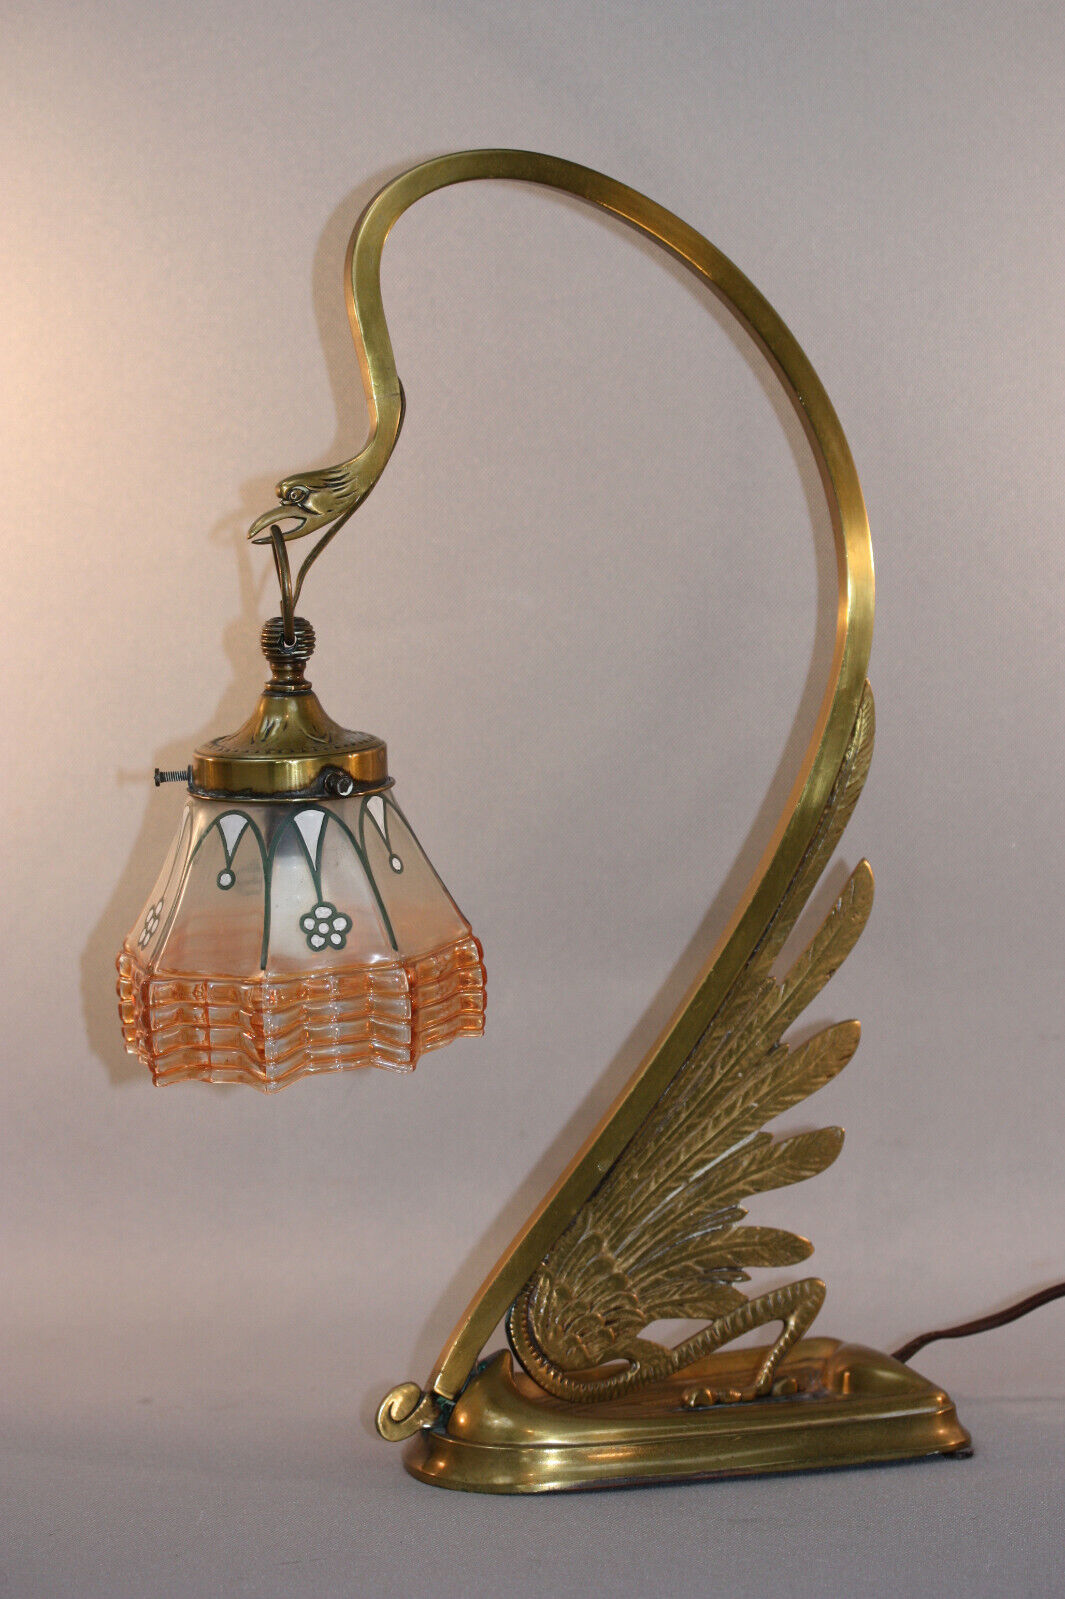 ANTIQUE ART NOUVEAU AUSTRIAN SECESSIONIST LAMP - SWAN FORM, GLASS SHADE